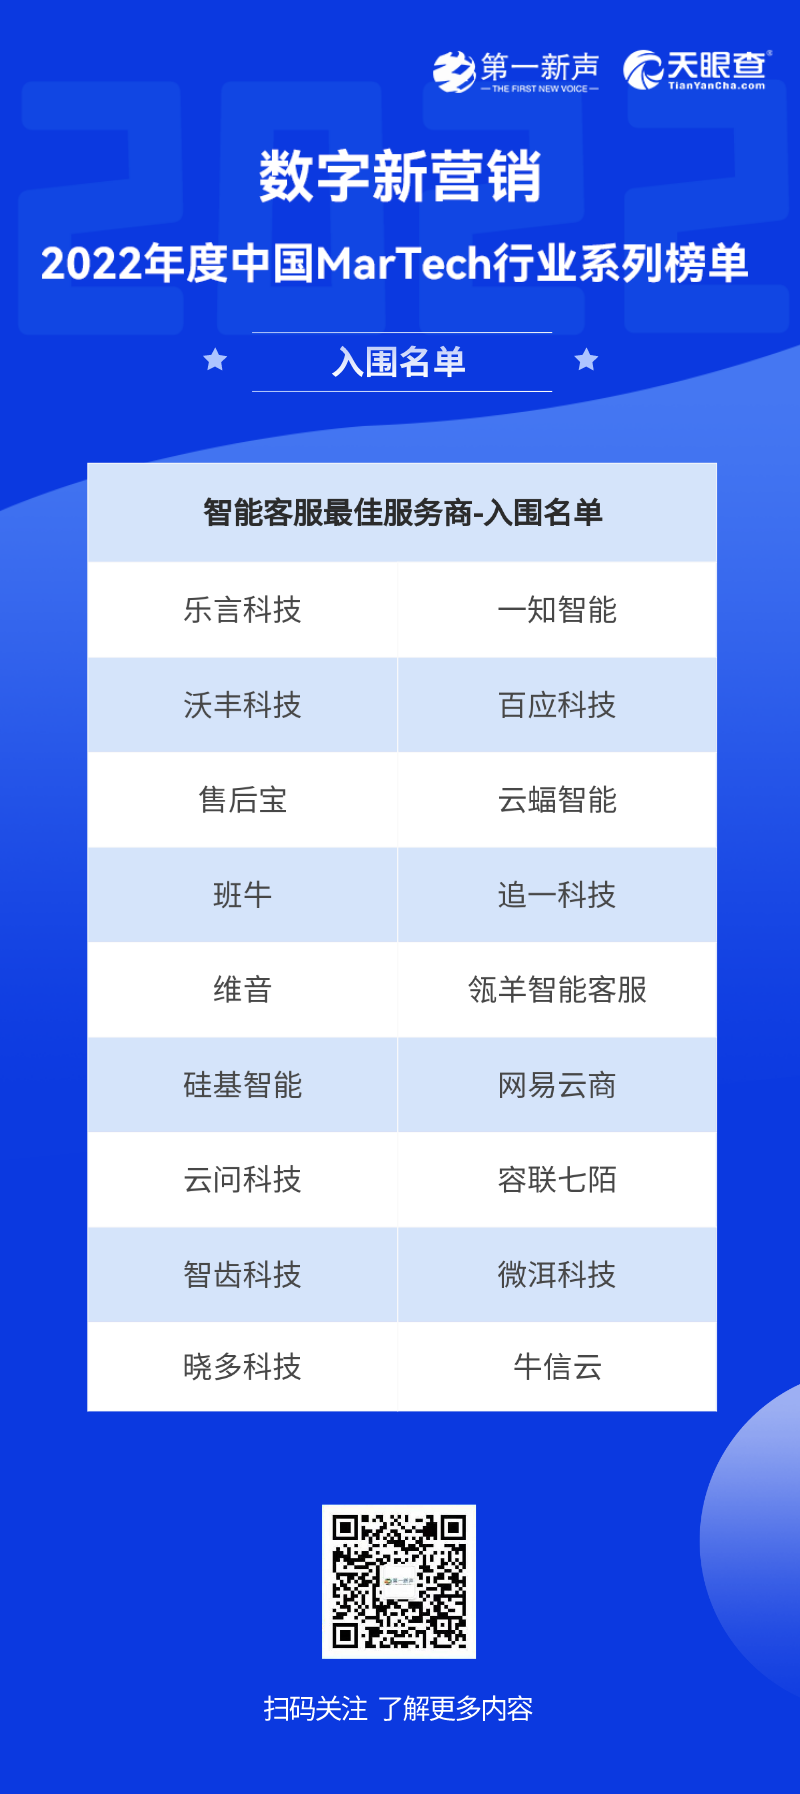 2022年度中国MarTech行业系列榜单-入围名单公布｜第一新声&天眼查 第2张